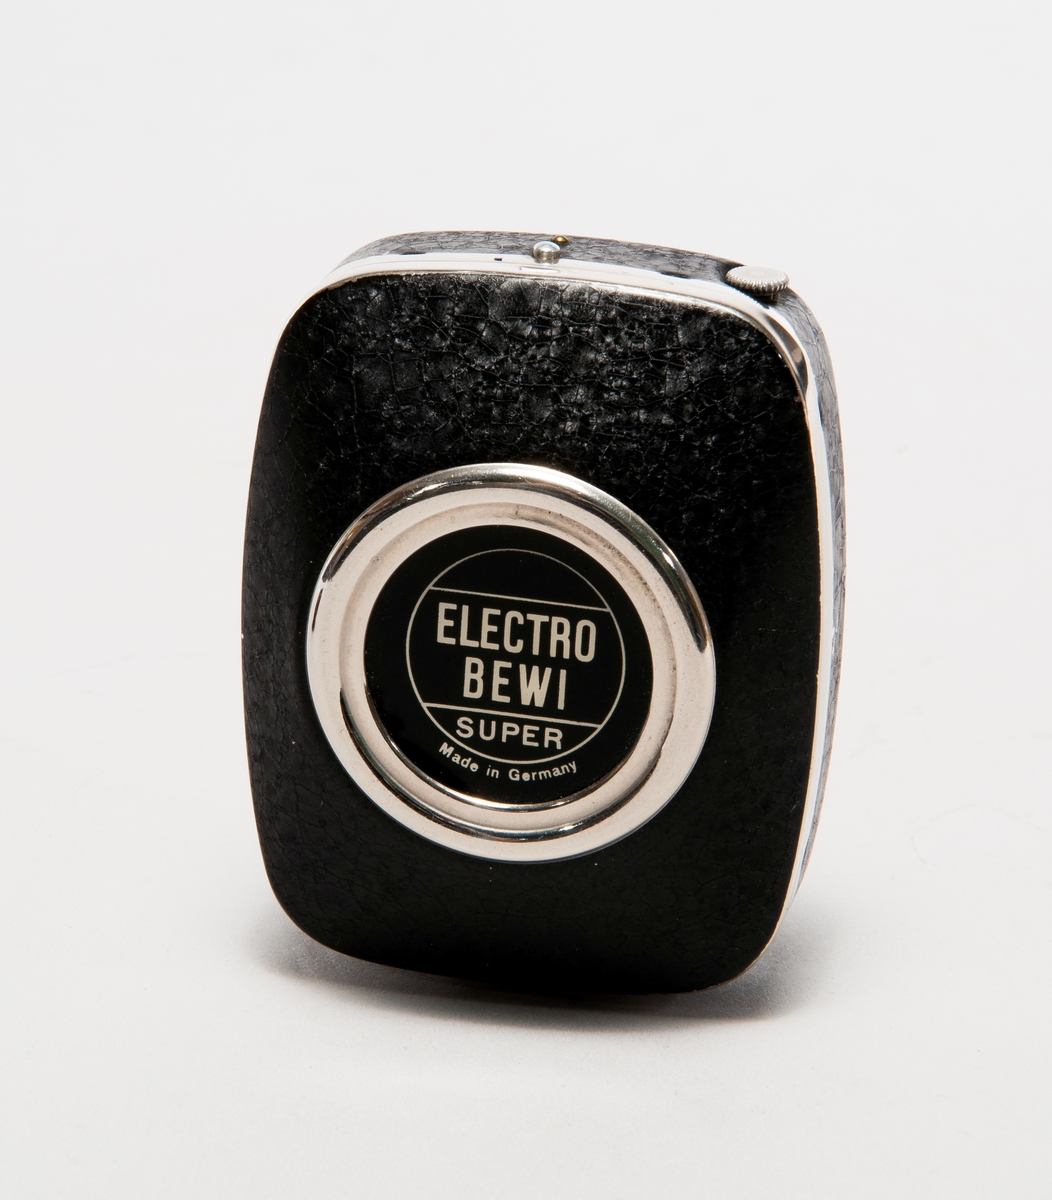 Exponeringsmätare Electro-BEWI typ Super, för stillbilds- eller filmfotografering. I läderfodral med blixtlås.
Nr på baksidan: B3793.